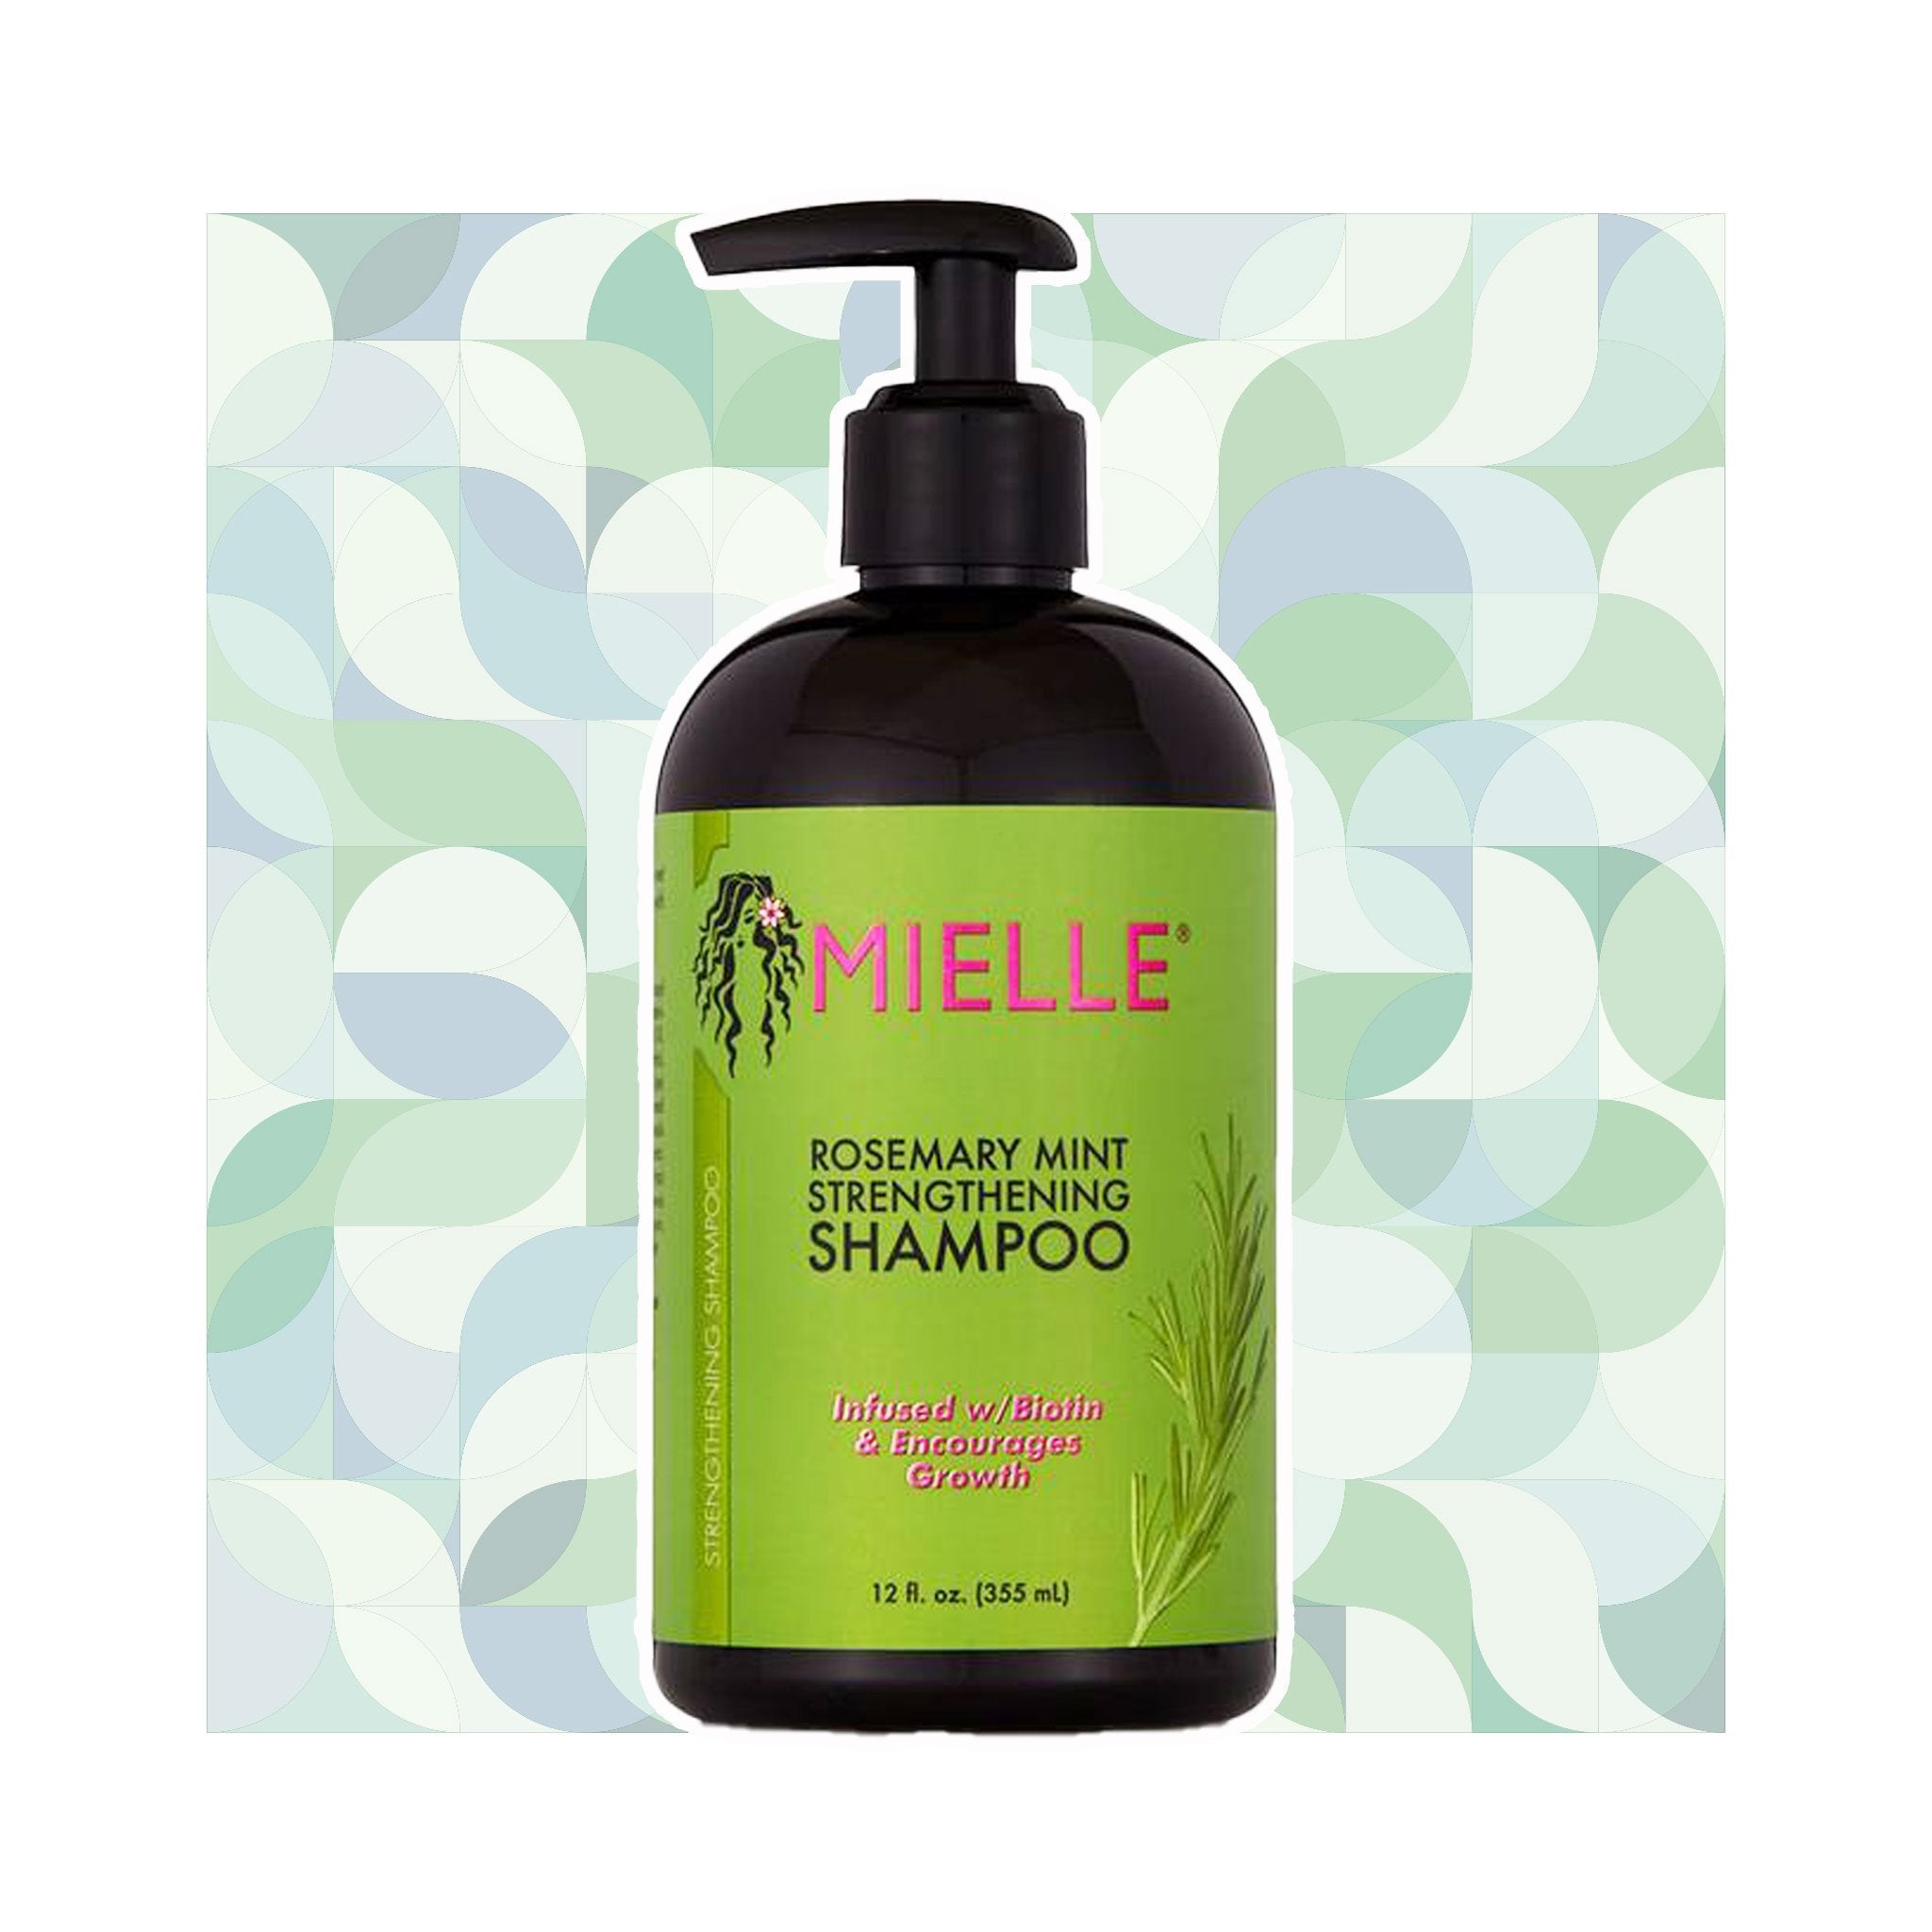 https://lockenkopf.ch/cdn/shop/products/mielle-organics-rosemary-mint-strengthening-shampoo-lockenkopf-906654.jpg?v=1606433235